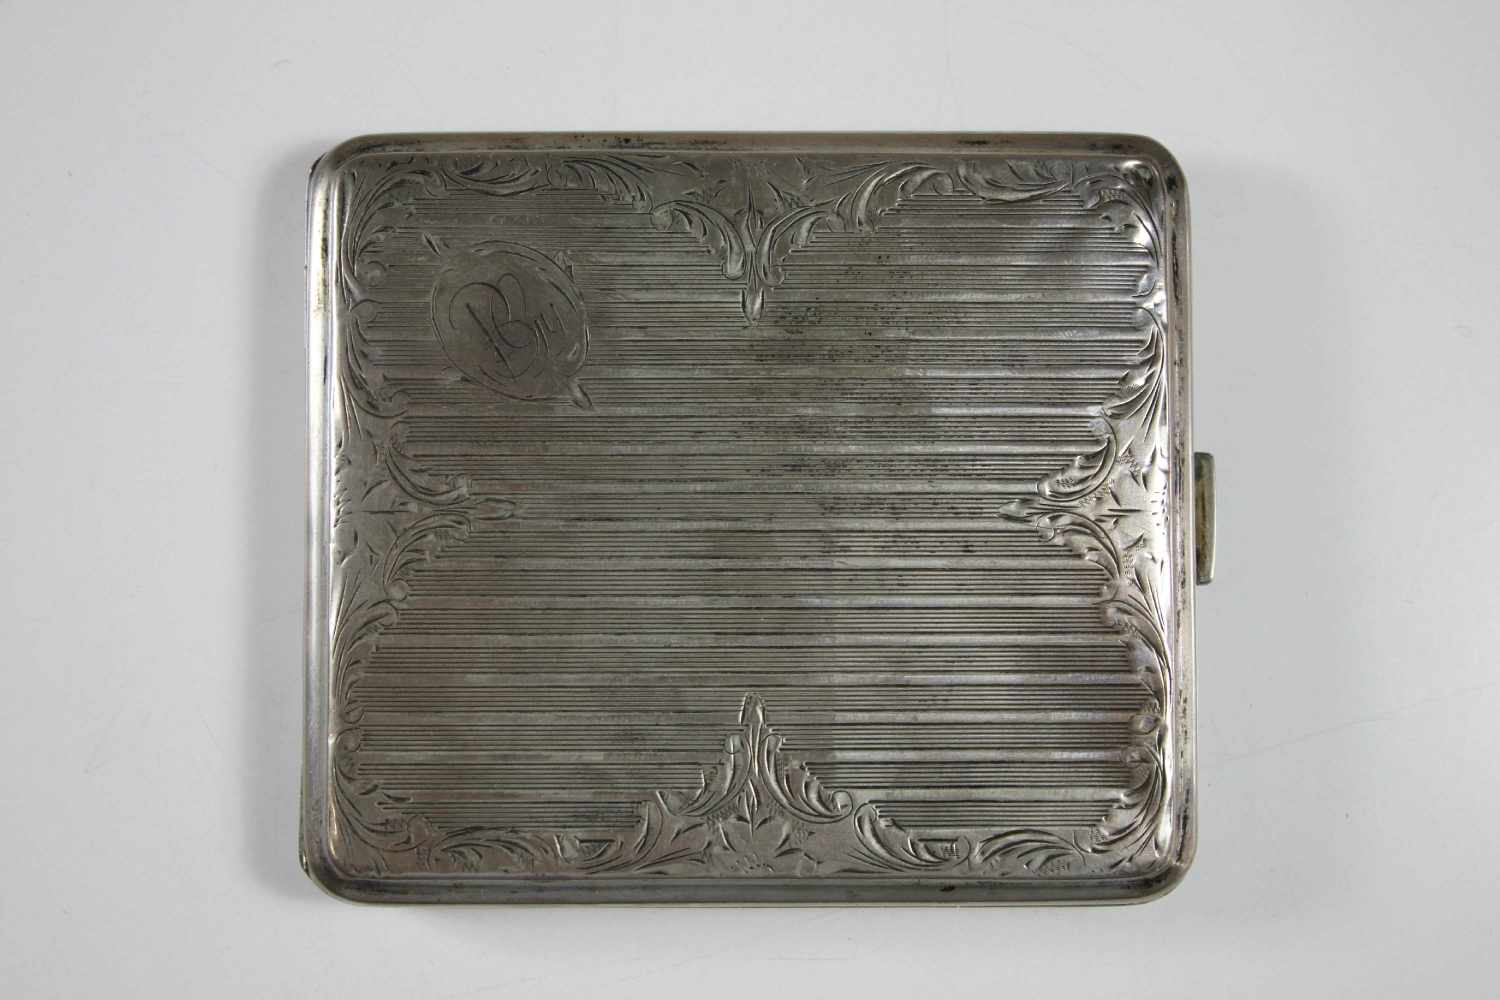 Zigarettenetui, Silber punziert, Gewicht ca. 75 gr., Maße: 9 x 8 x 1 cm.